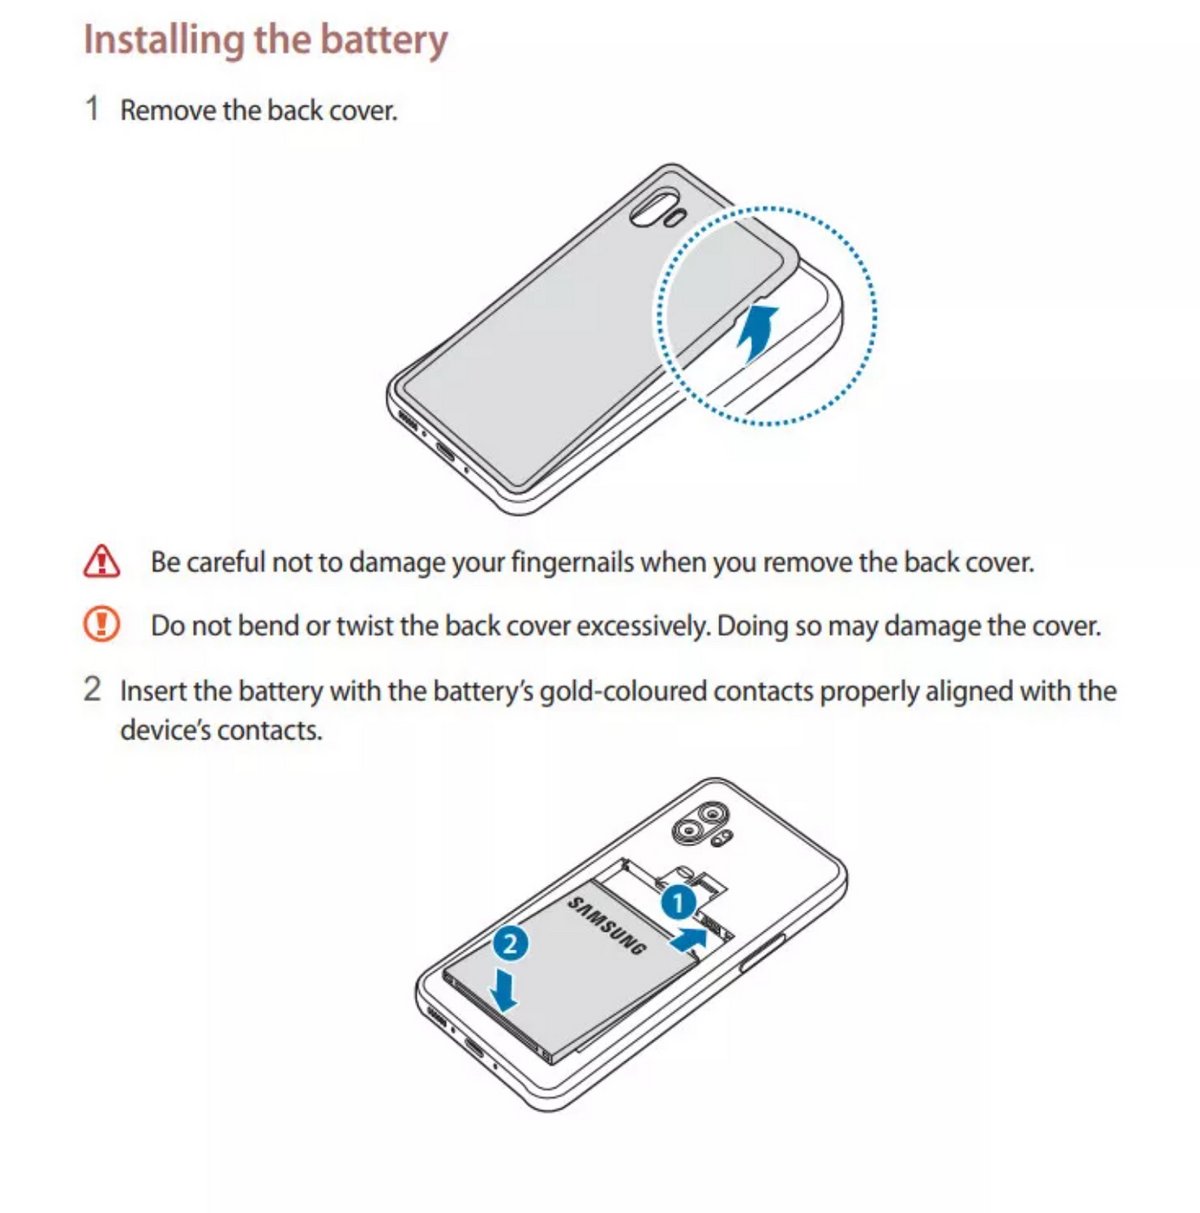 SAMSUNG Galaxy Xcover 6 Pin chuyên nghiệp © Samsung